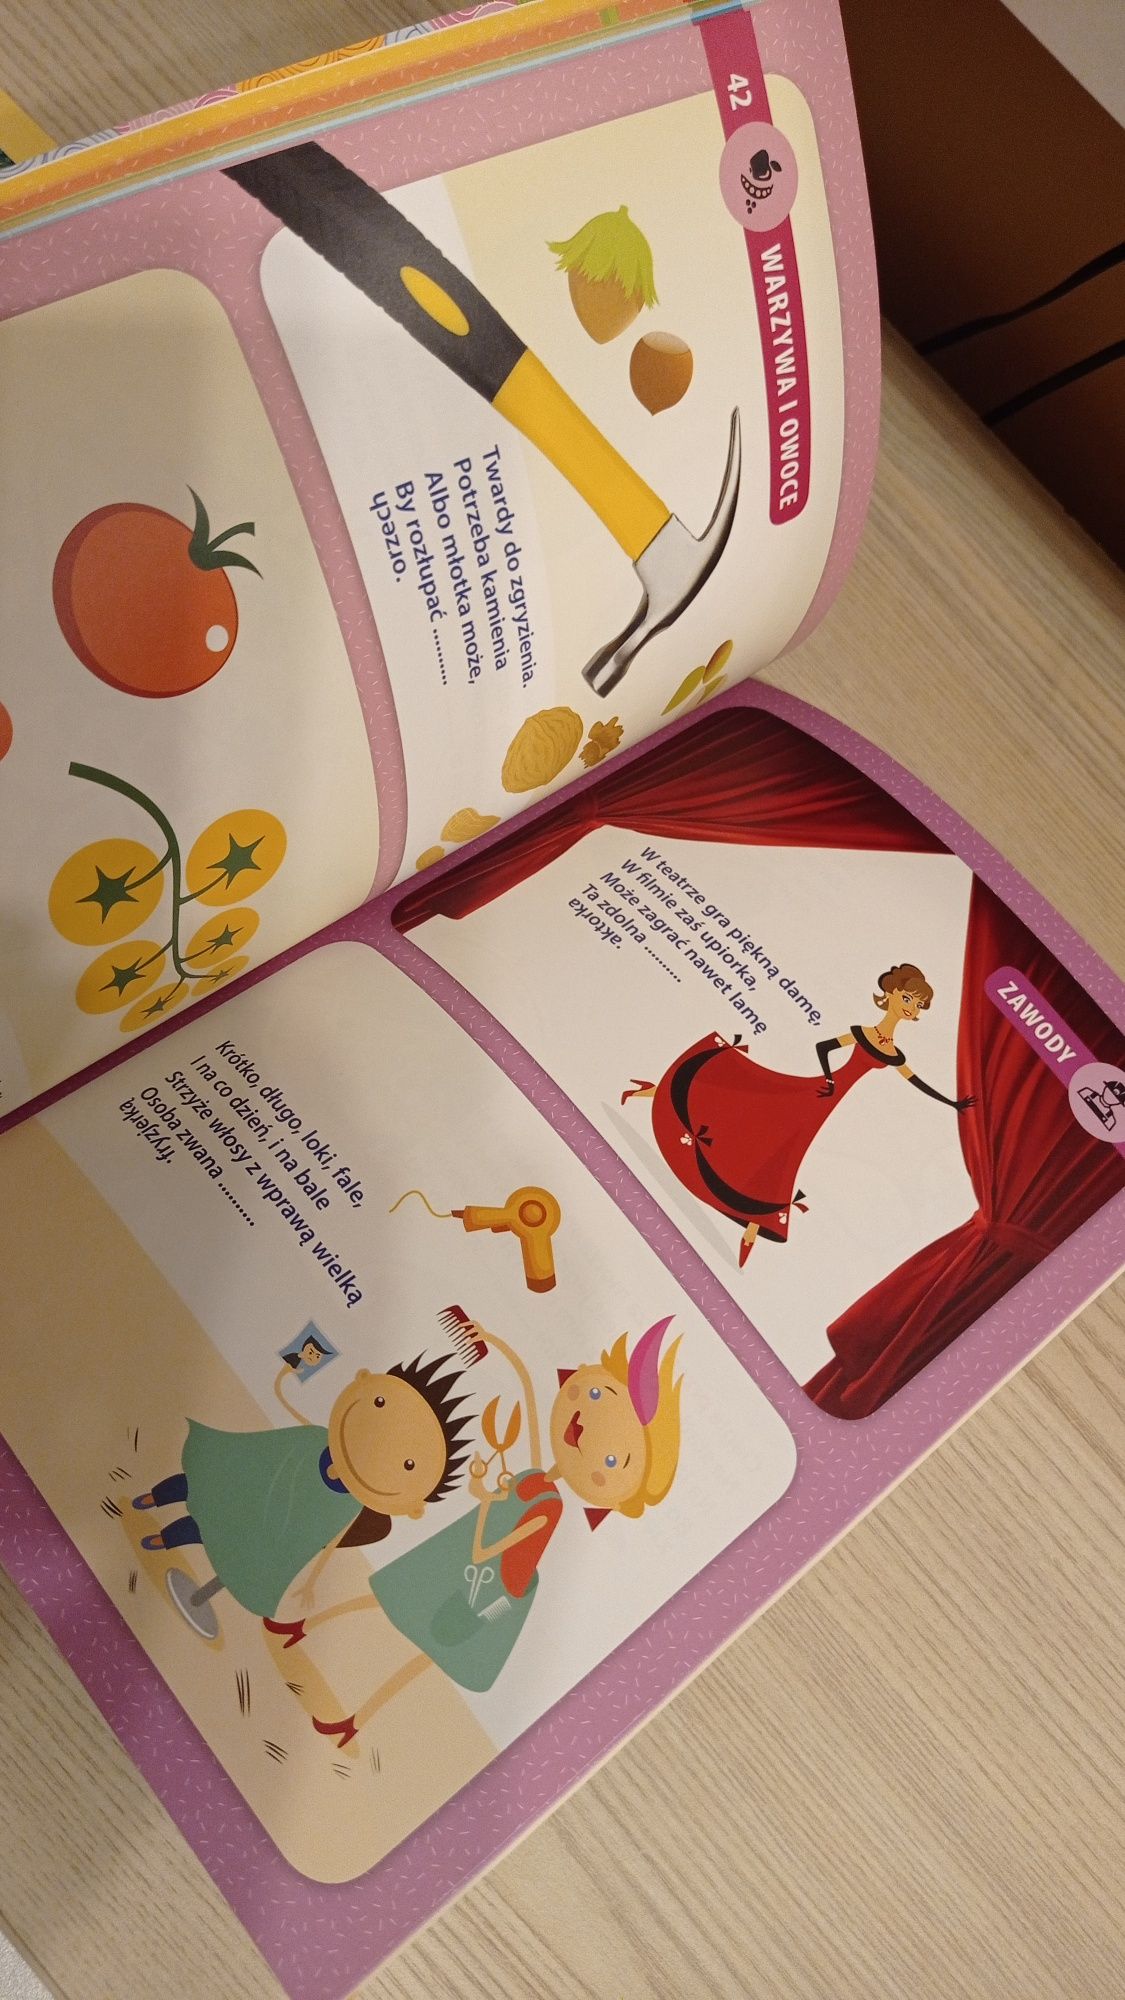 Nowa książka Zagadki dla dzieci - kolorowa, mnóstwo pomysłów i haseł